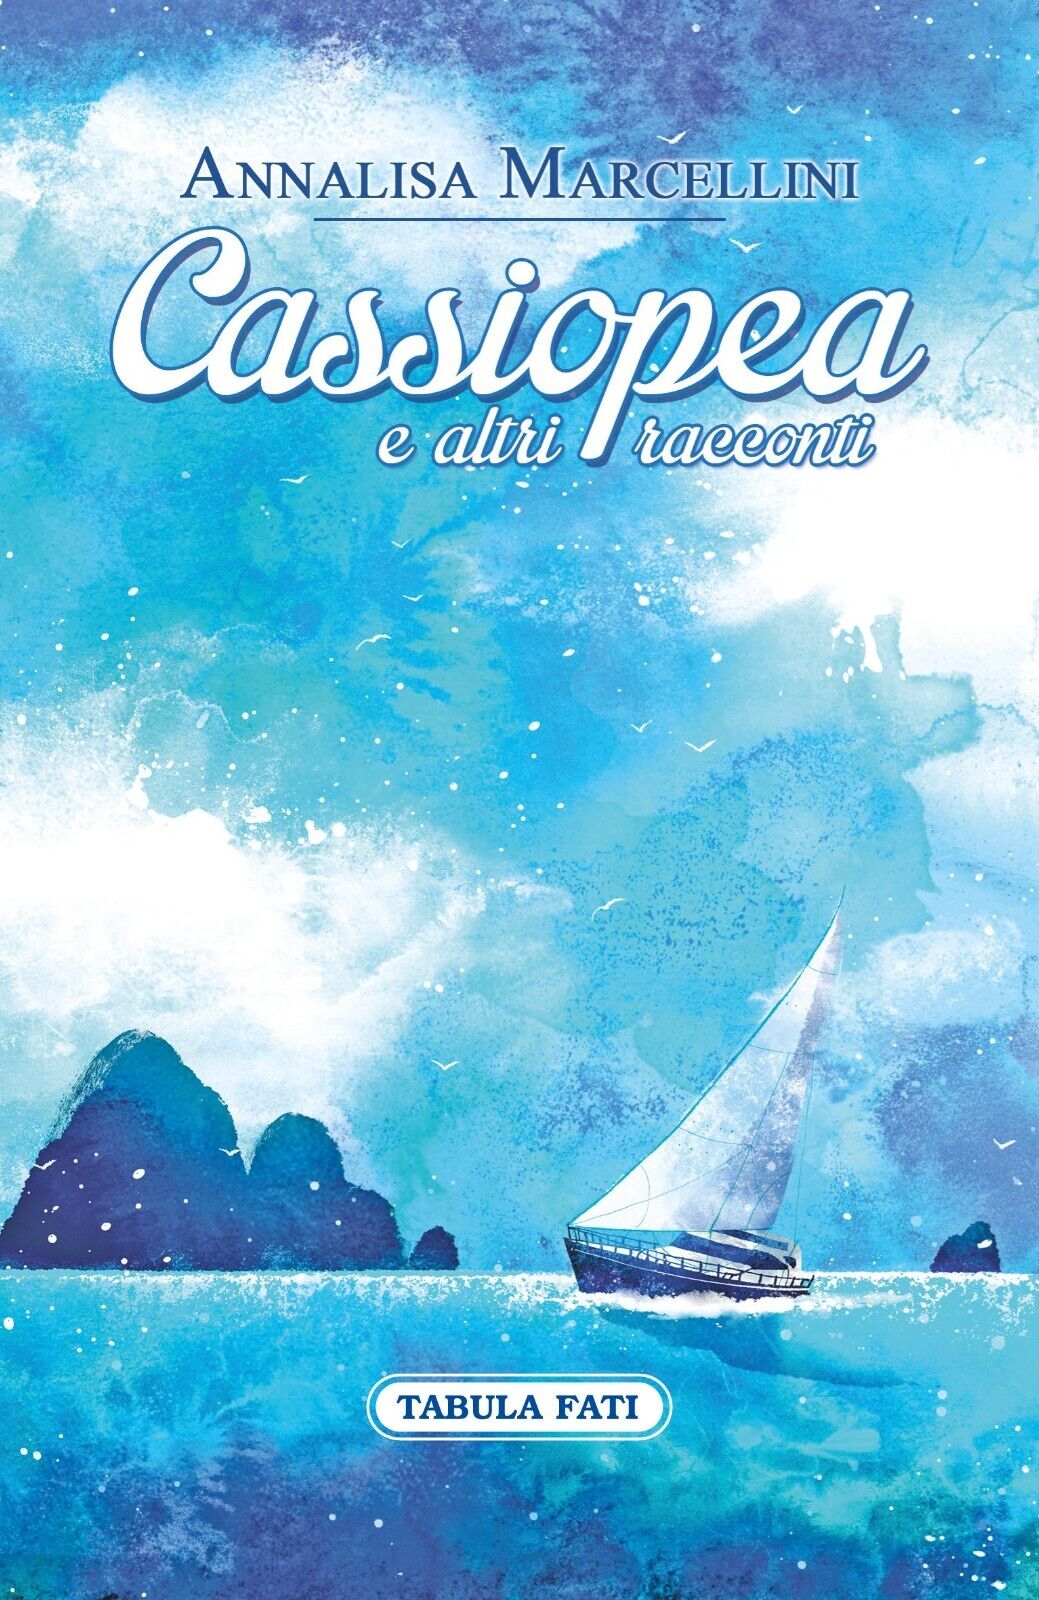 Cassiopea e altri racconti di Annalisa Marcellini, 2015, Tabula Fati libro usato